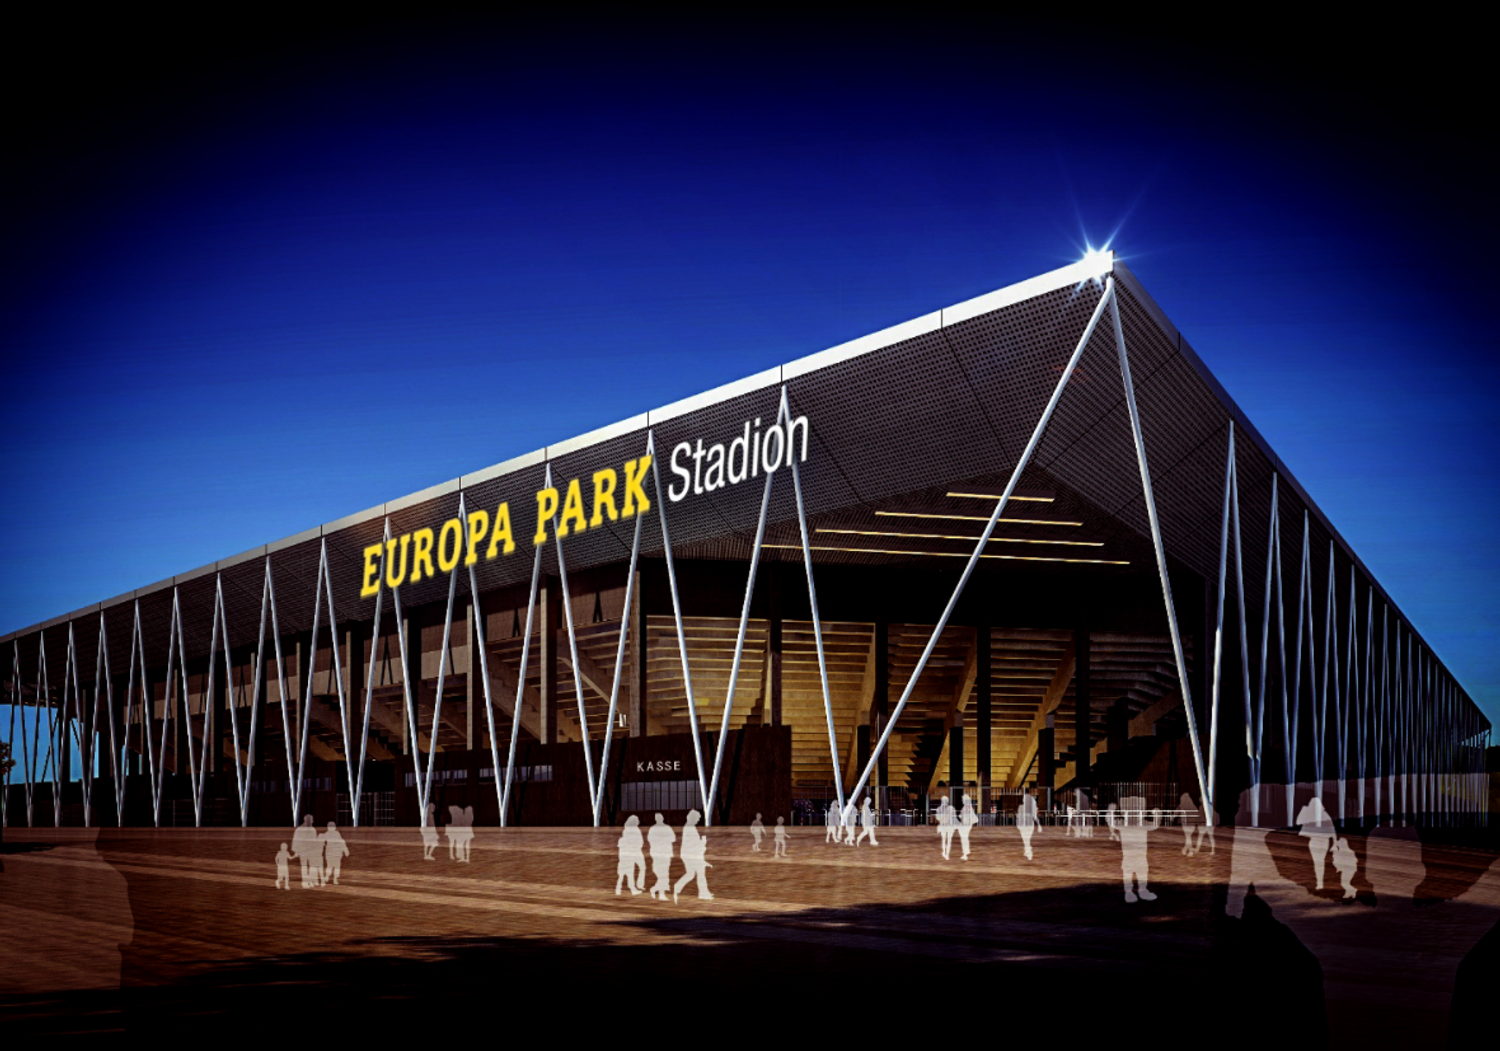 Europa Park Stadion Freiburg